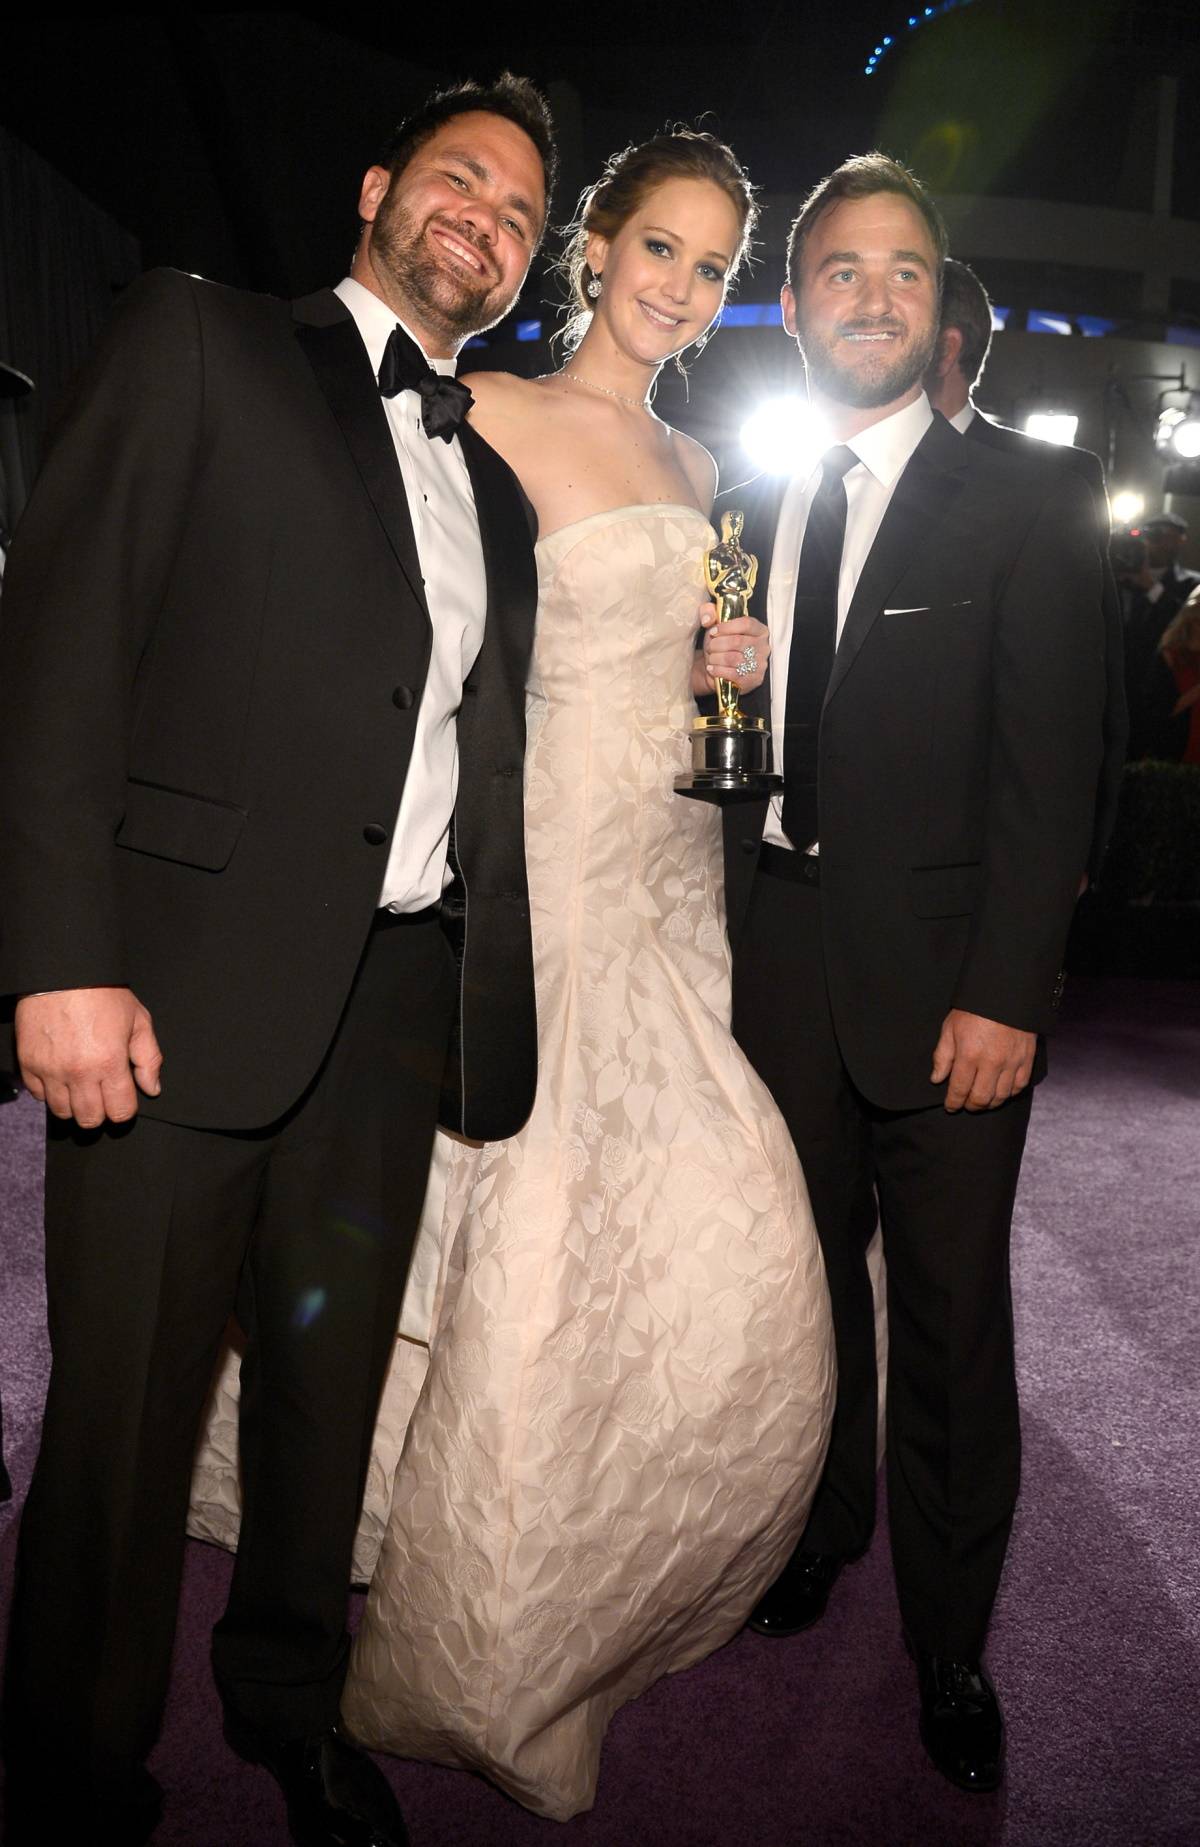 Jennifer Lawrence z braćmi, Benem i Blainem, 2013 rok 